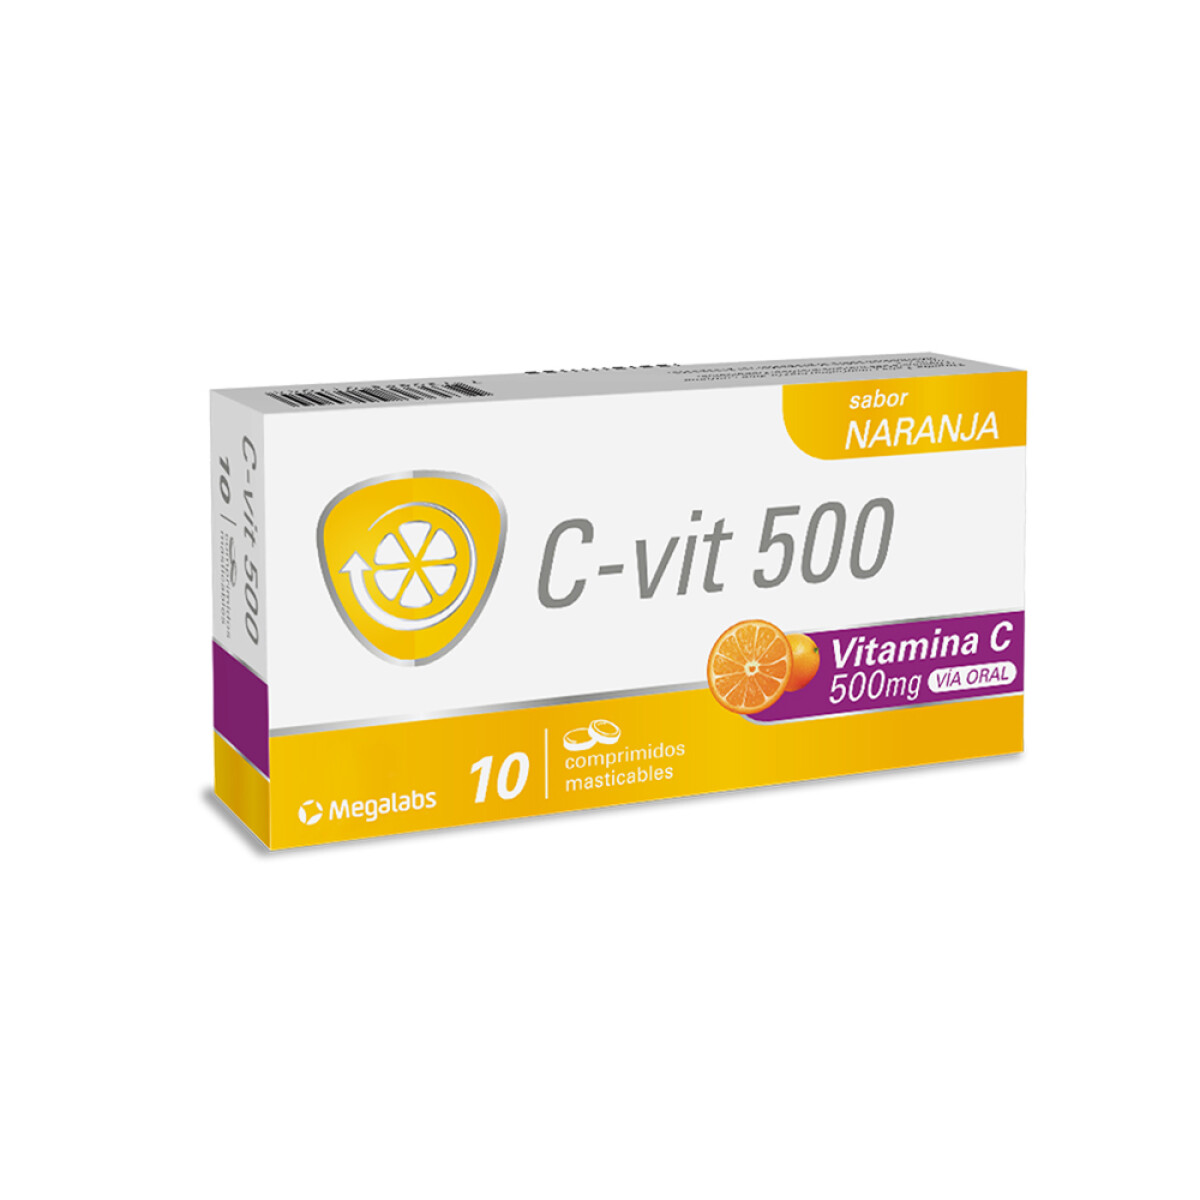 C-vit 500 Mg. 10 Comp. Masticables 